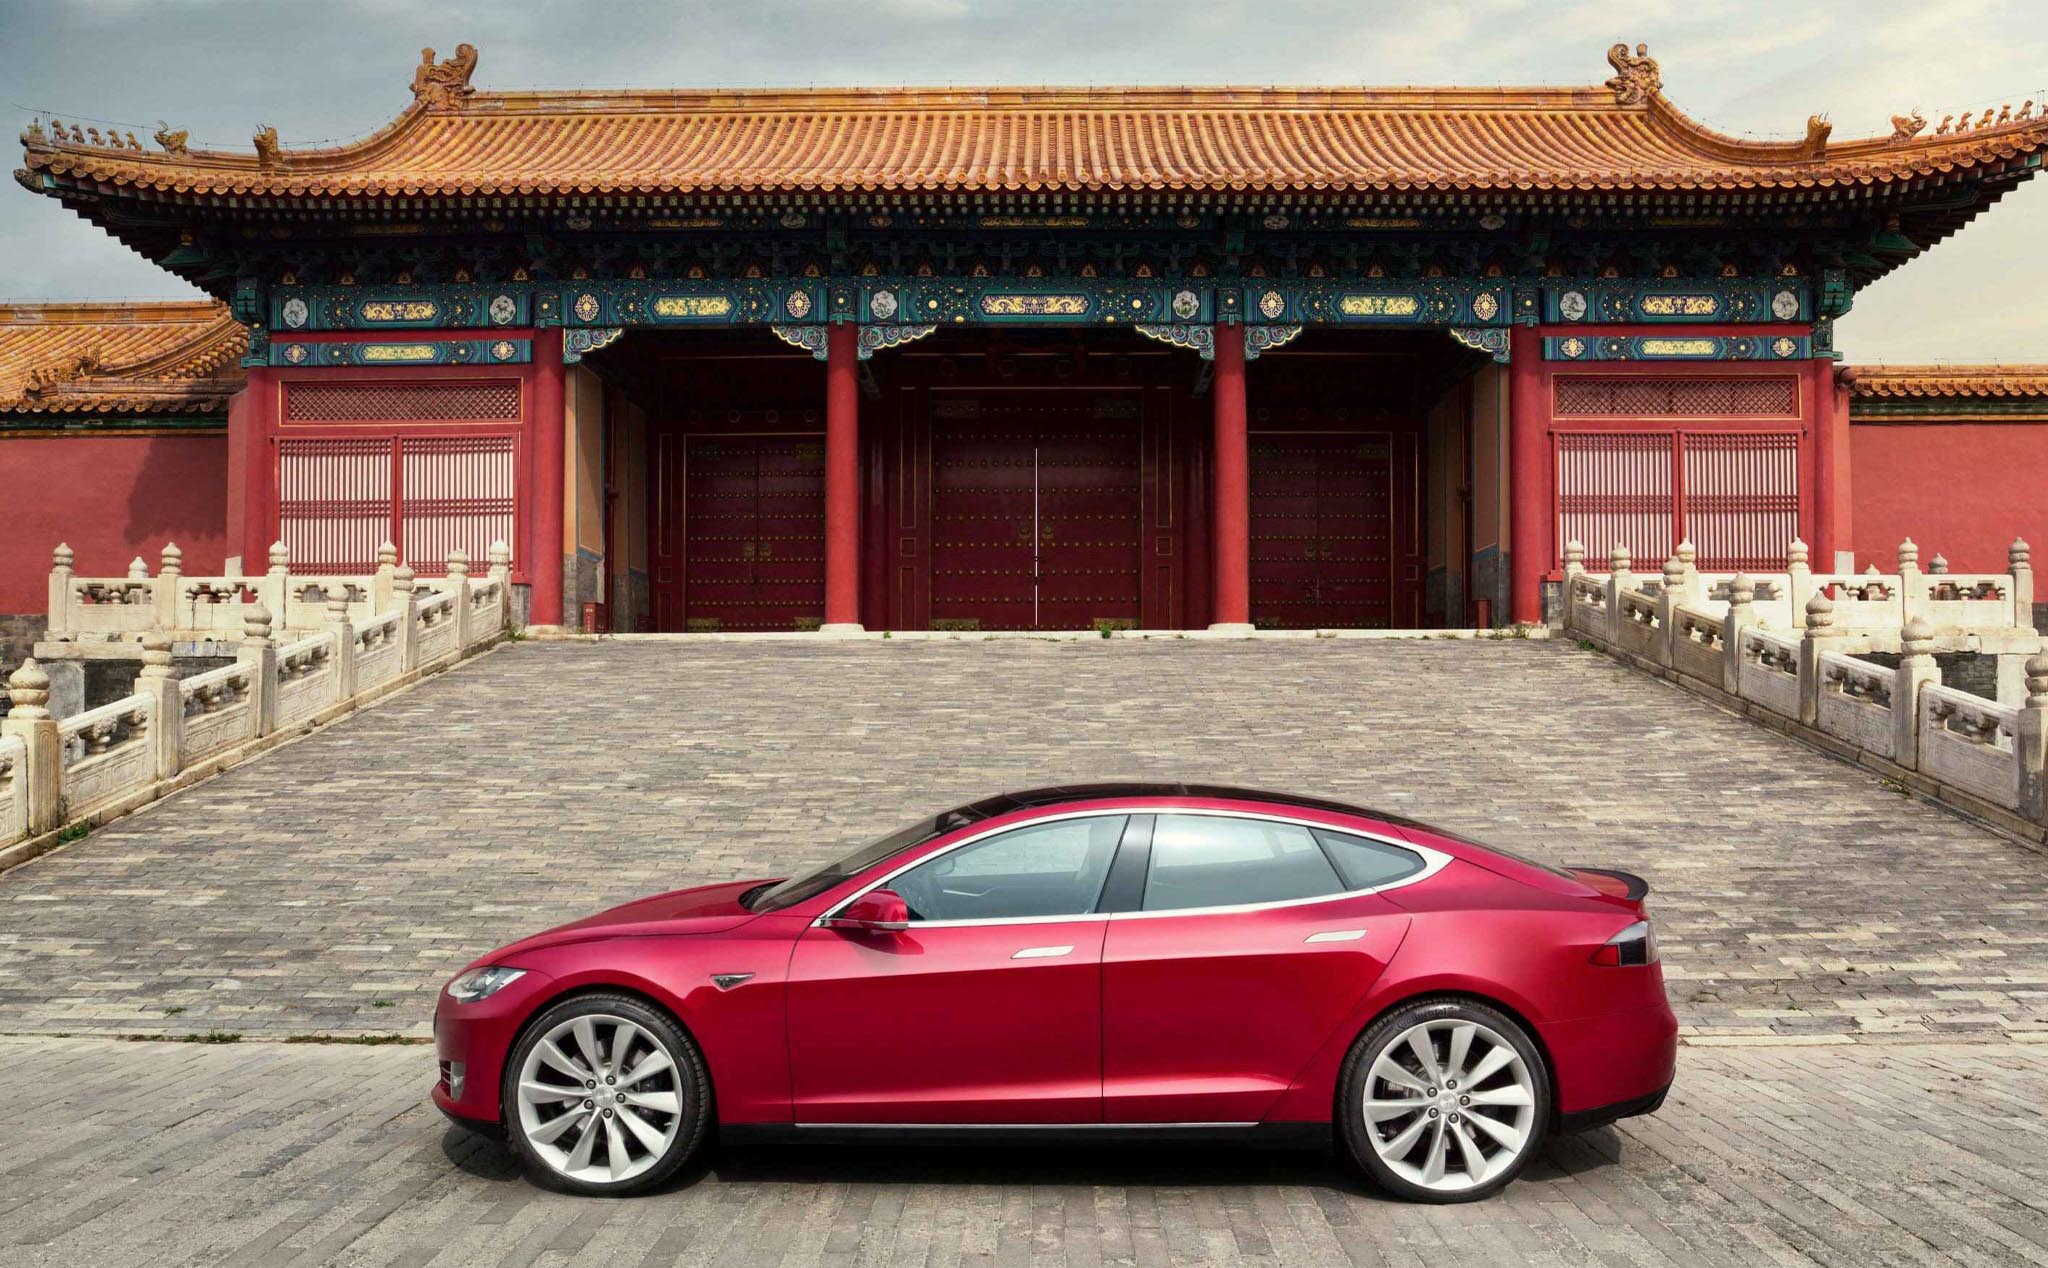 Tesla vỡ mộng ở Trung Quốc: Không thể phụ thuộc hết vào hỗ trợ của chính phủ nước này